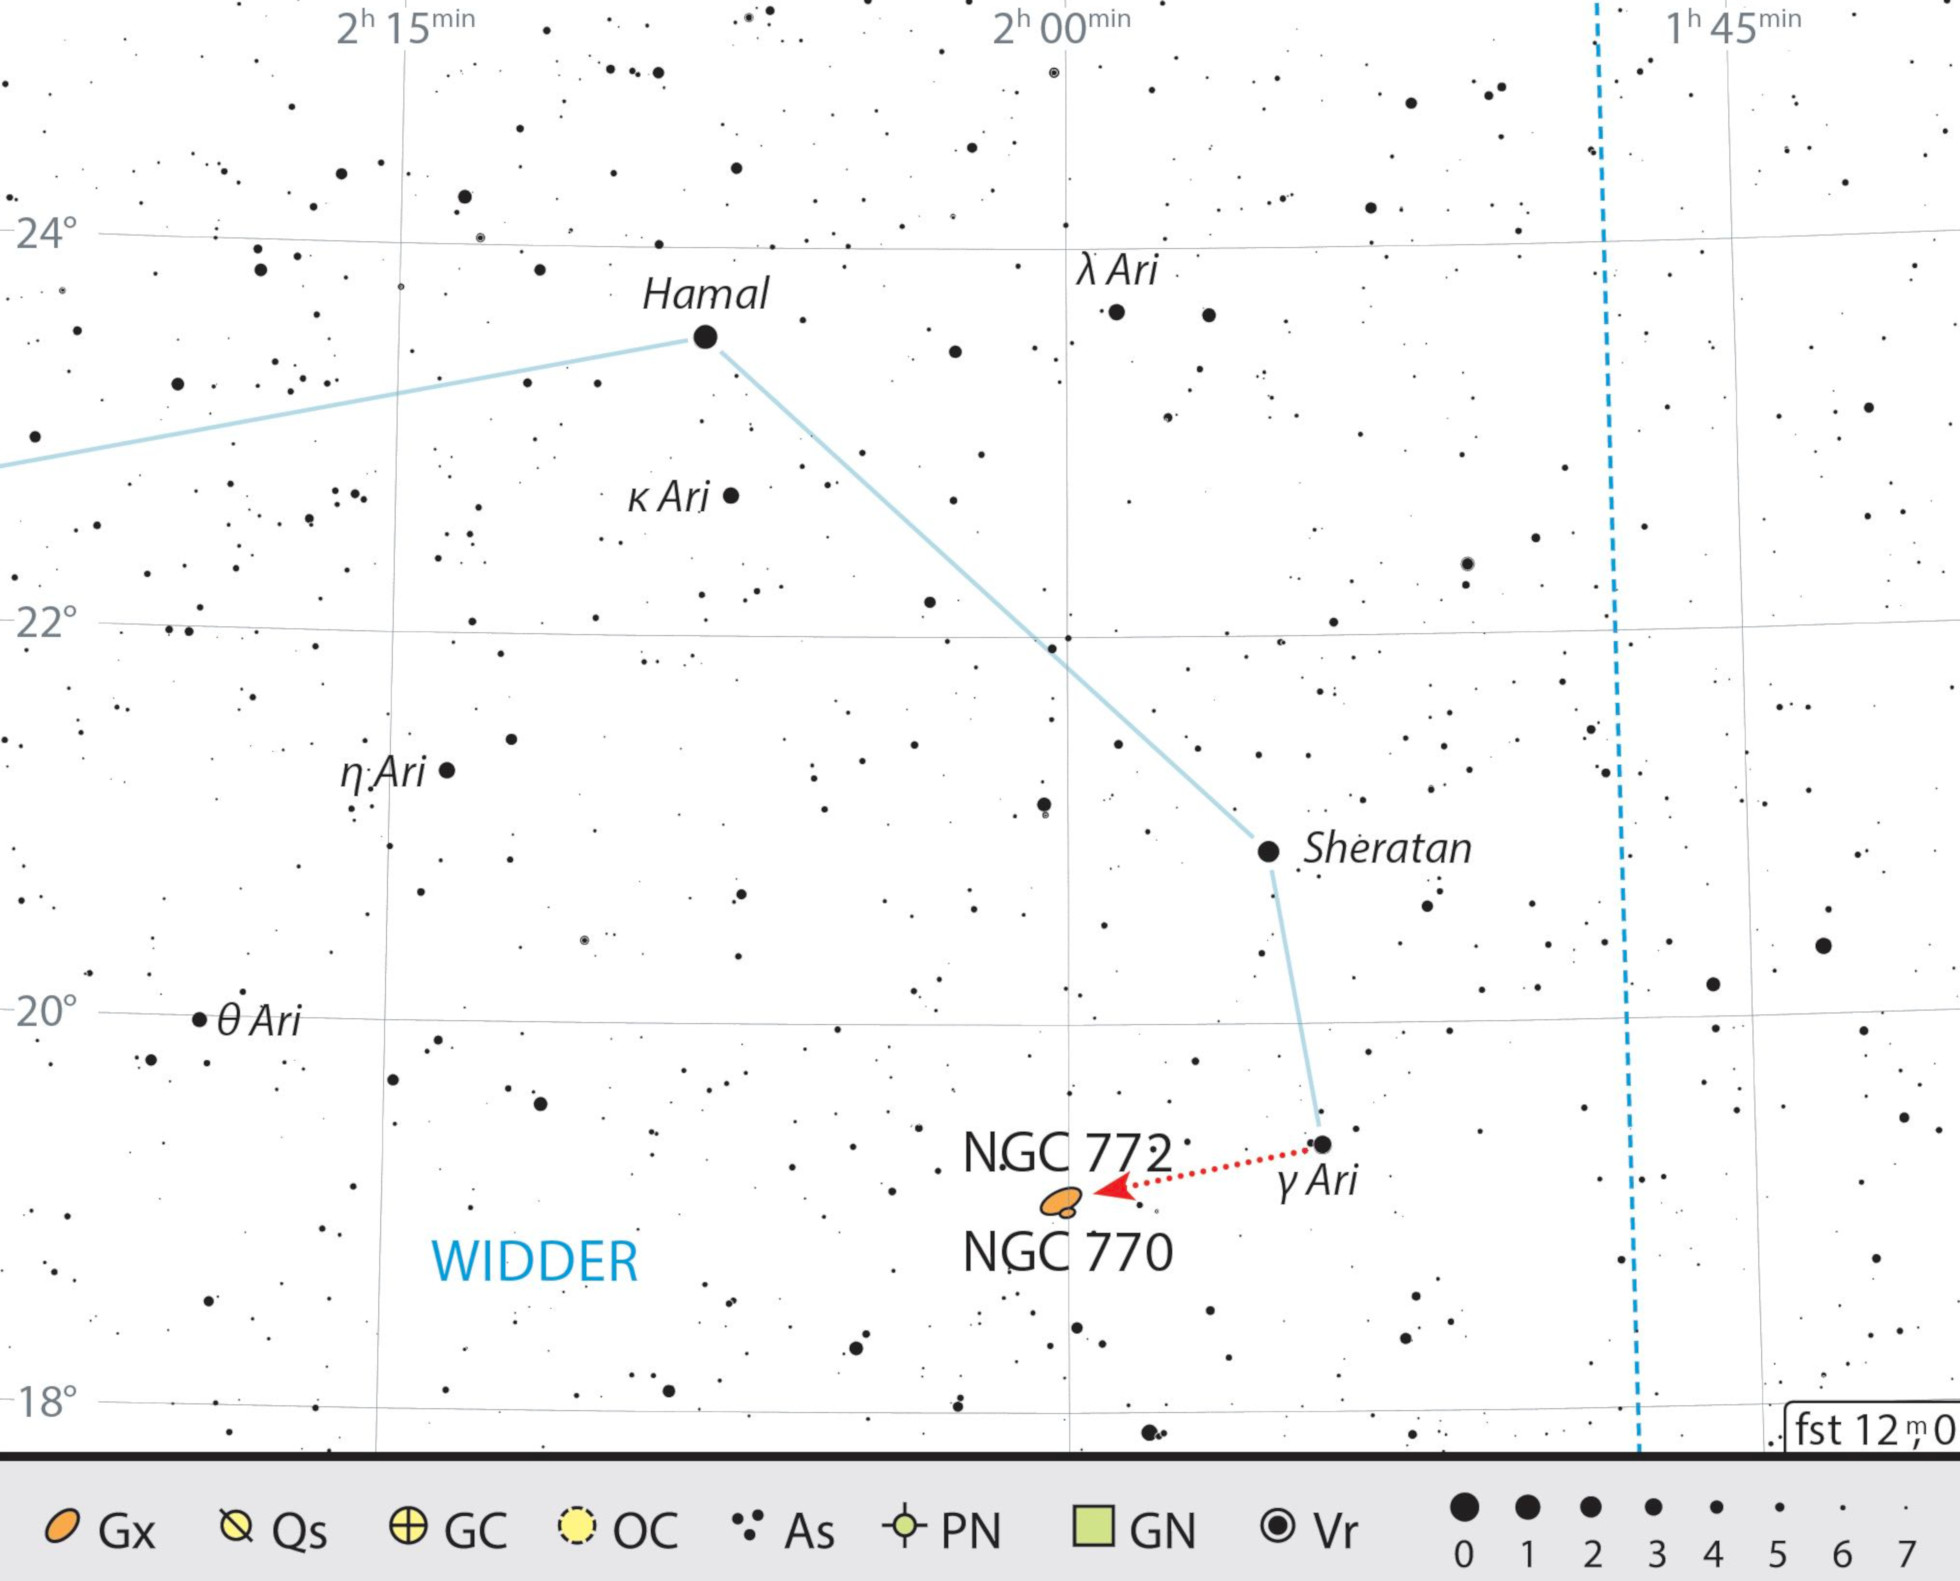 Mappa celeste di NGC 772 nella costellazione dell'Ariete. J. Scholten